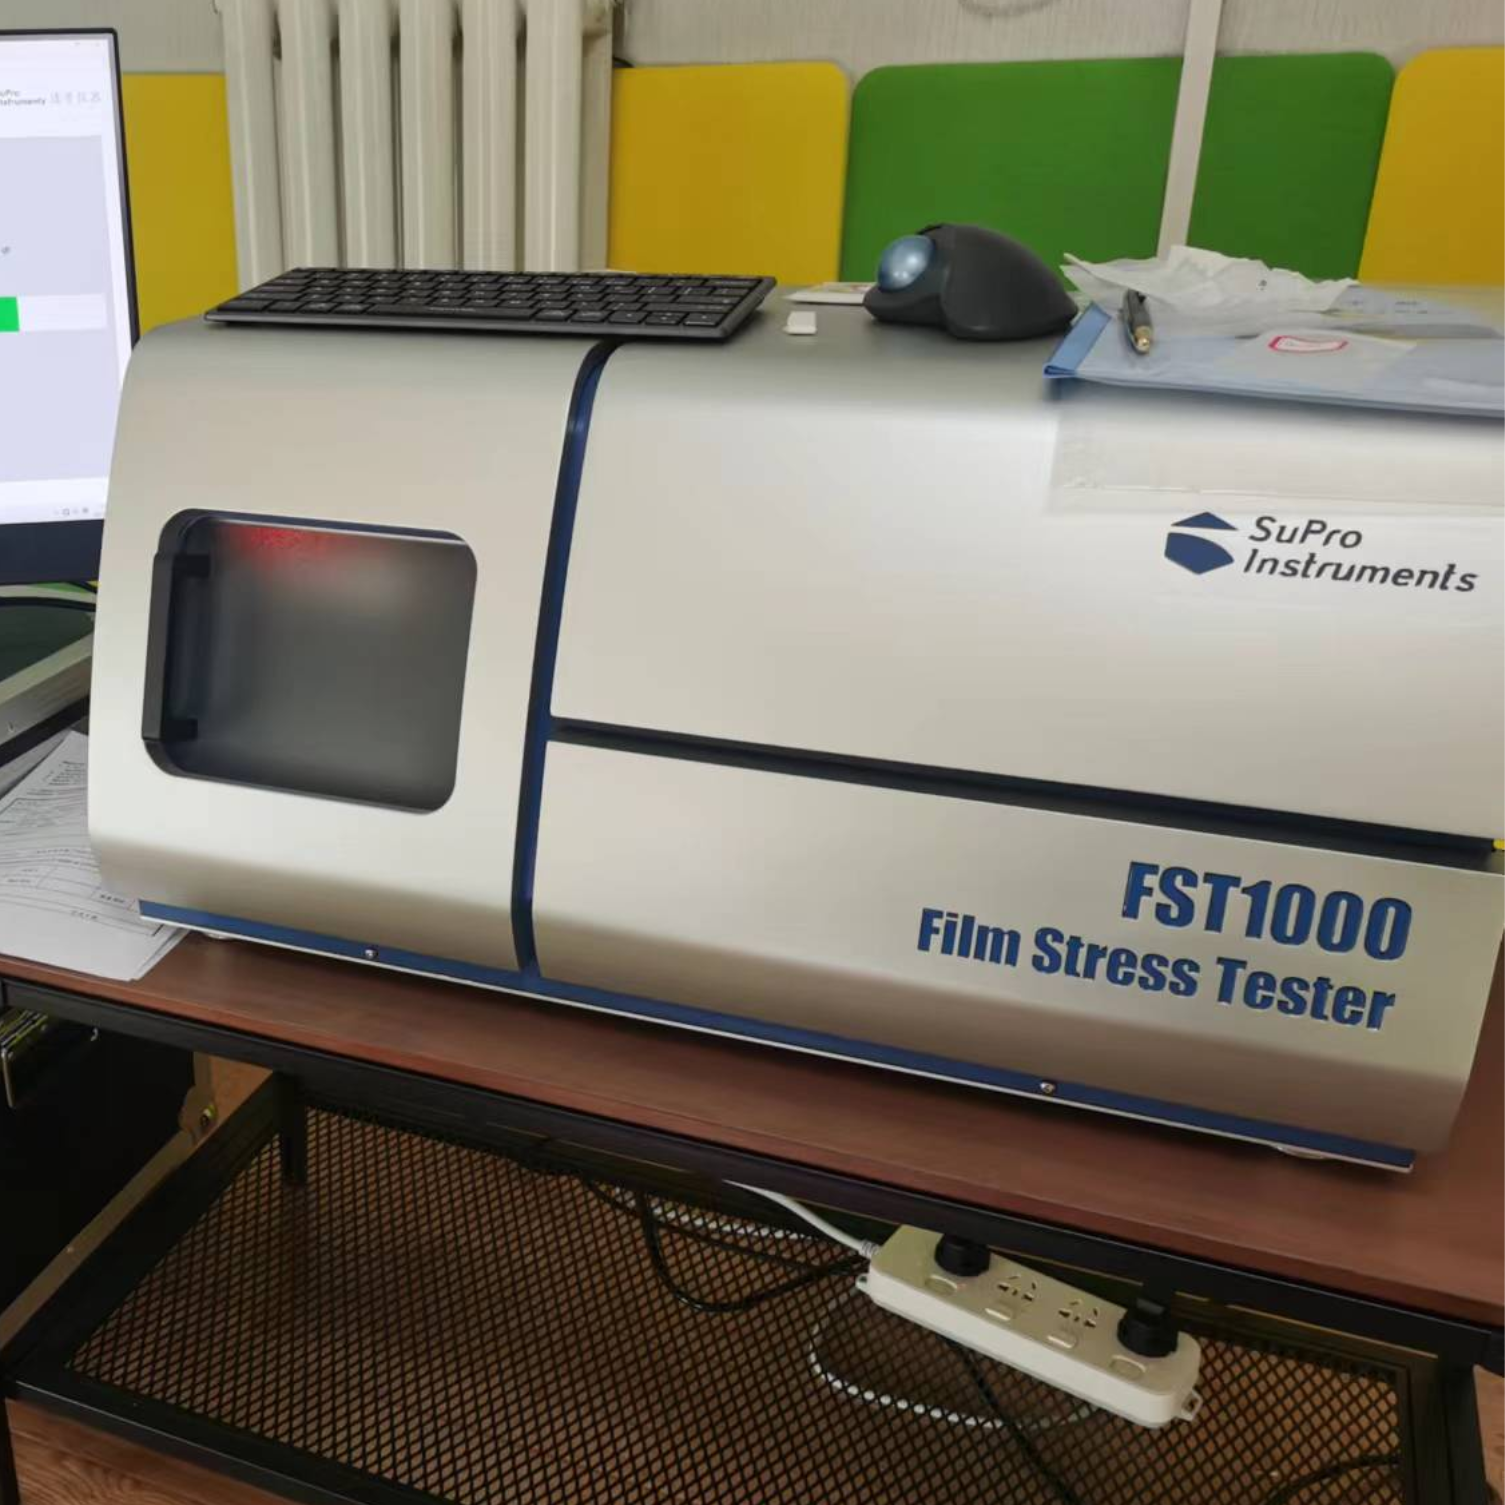 【速普仪器】硬质涂层残余应力测试仪FST1000